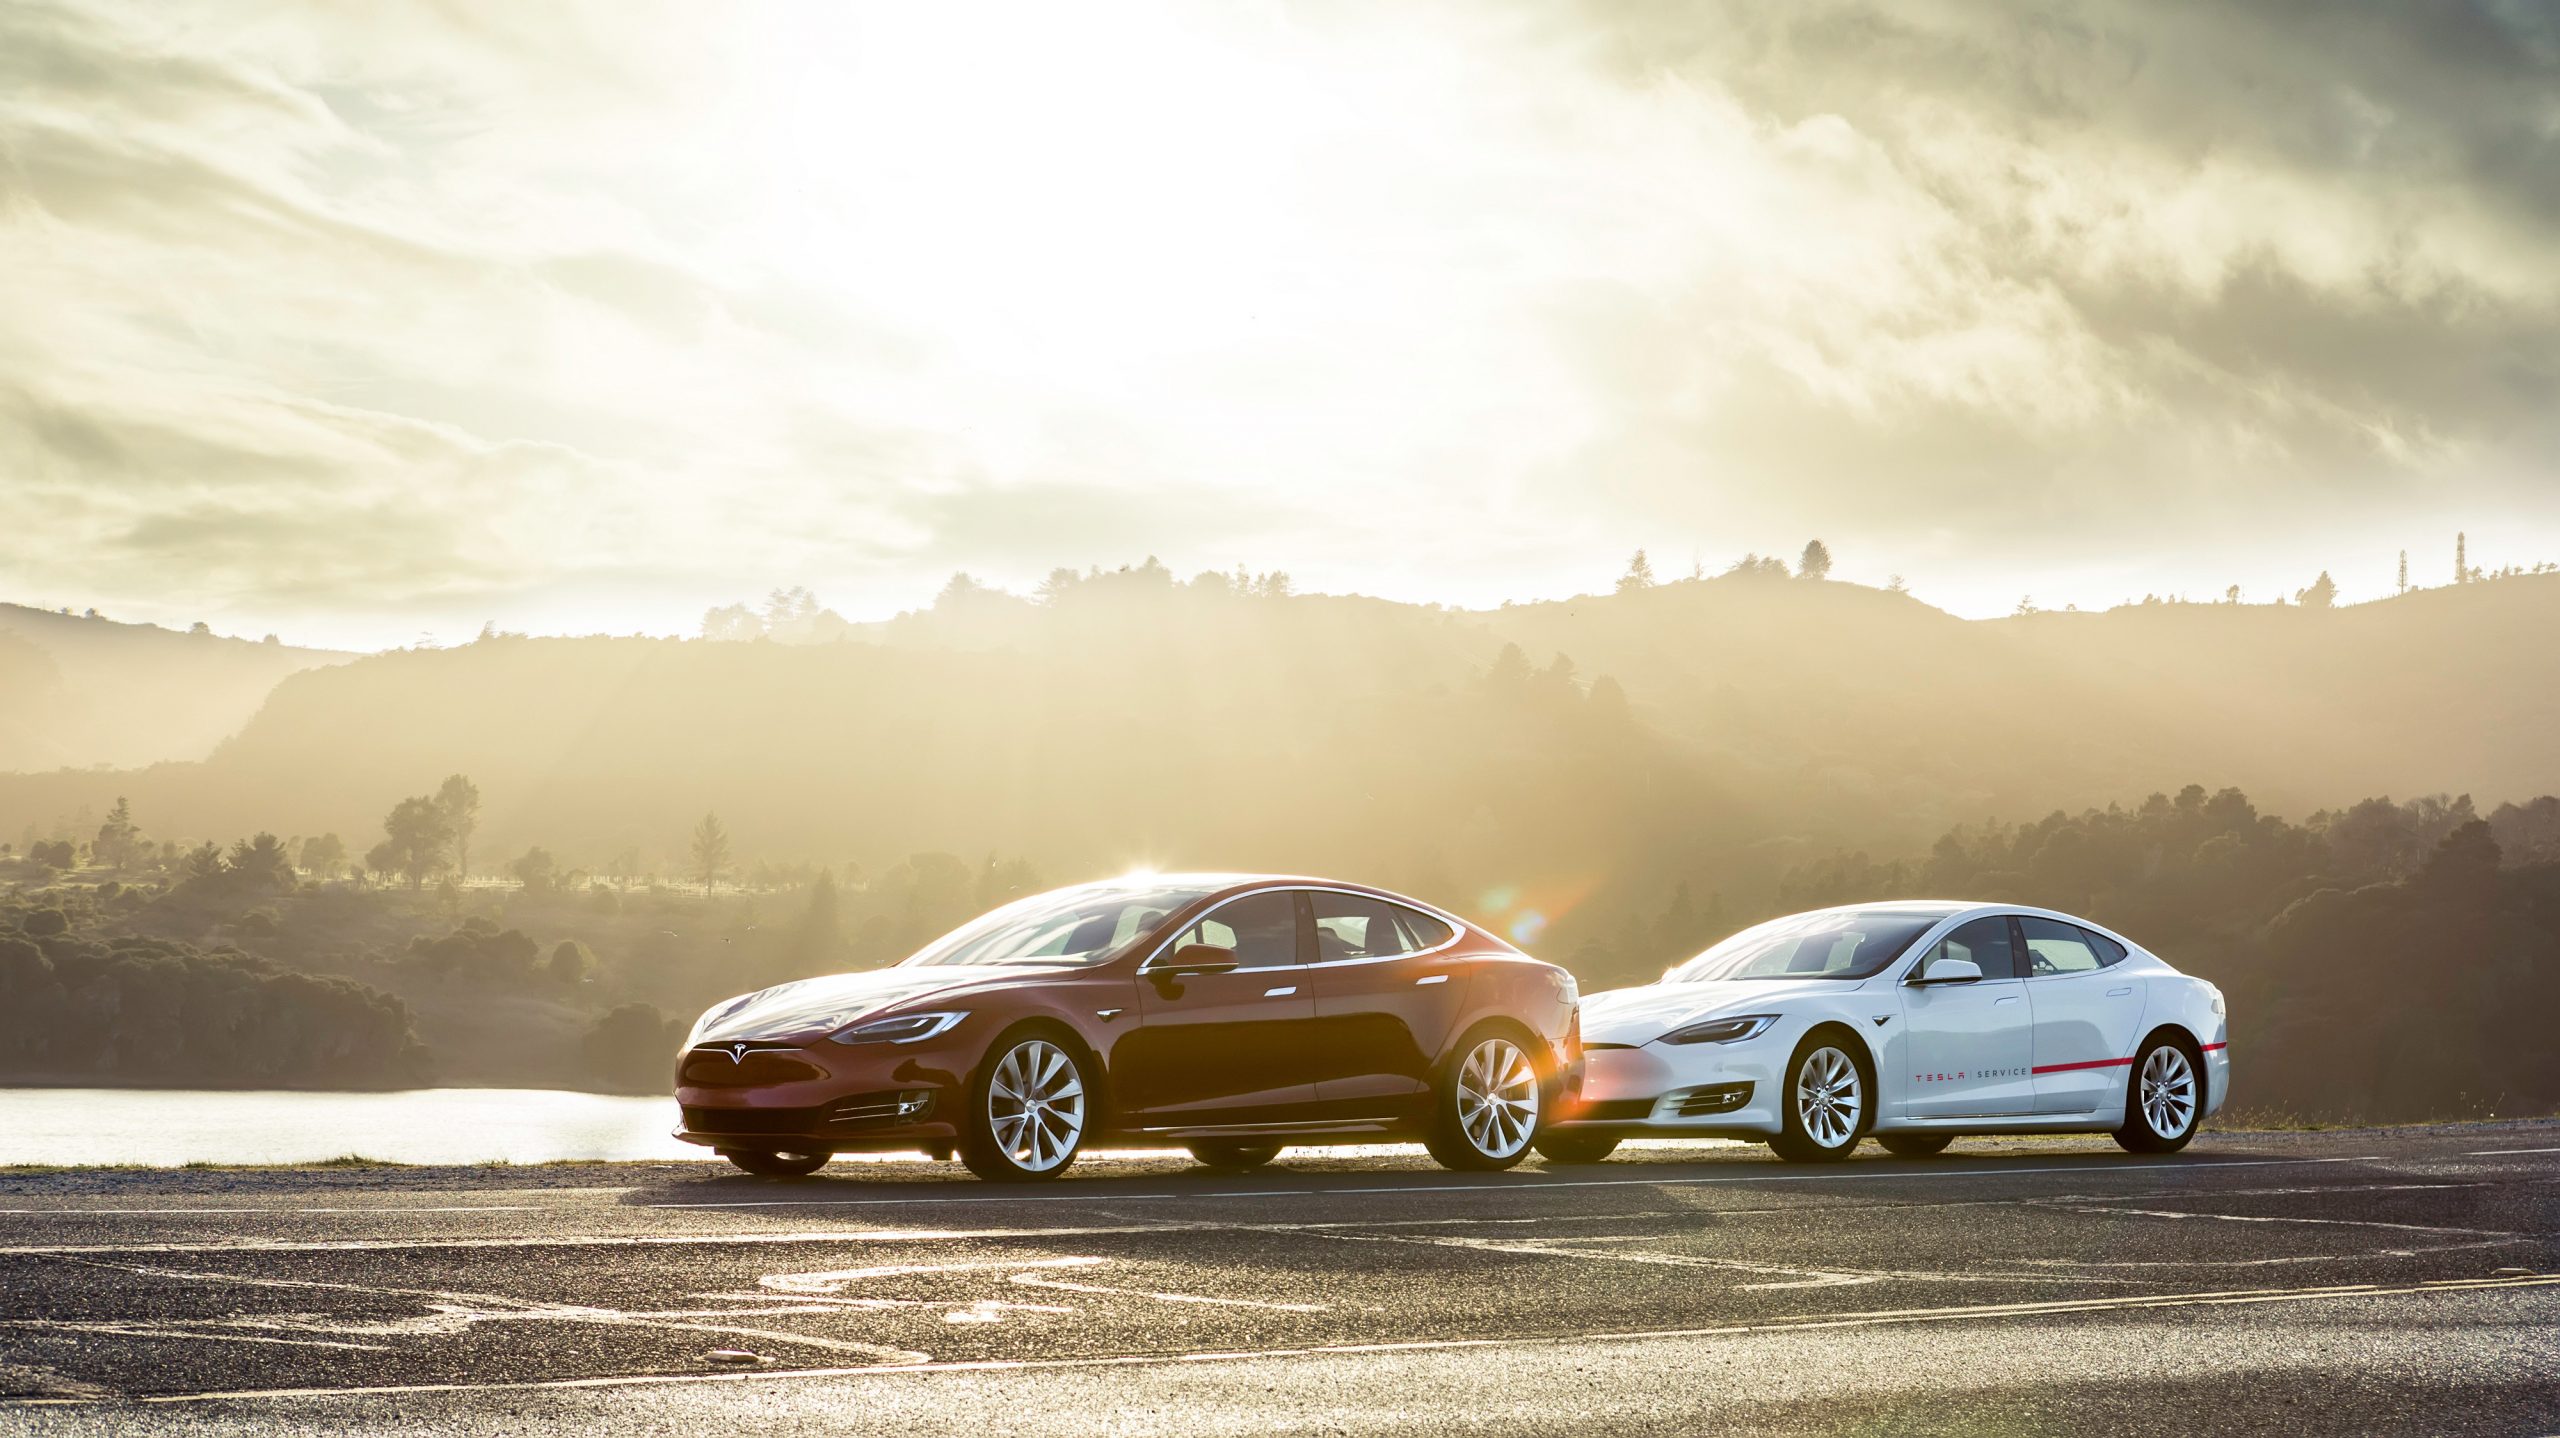 Tesla preguntó sobre los puntos de mejora, proporcionados por la comunidad de vehículos eléctricos.